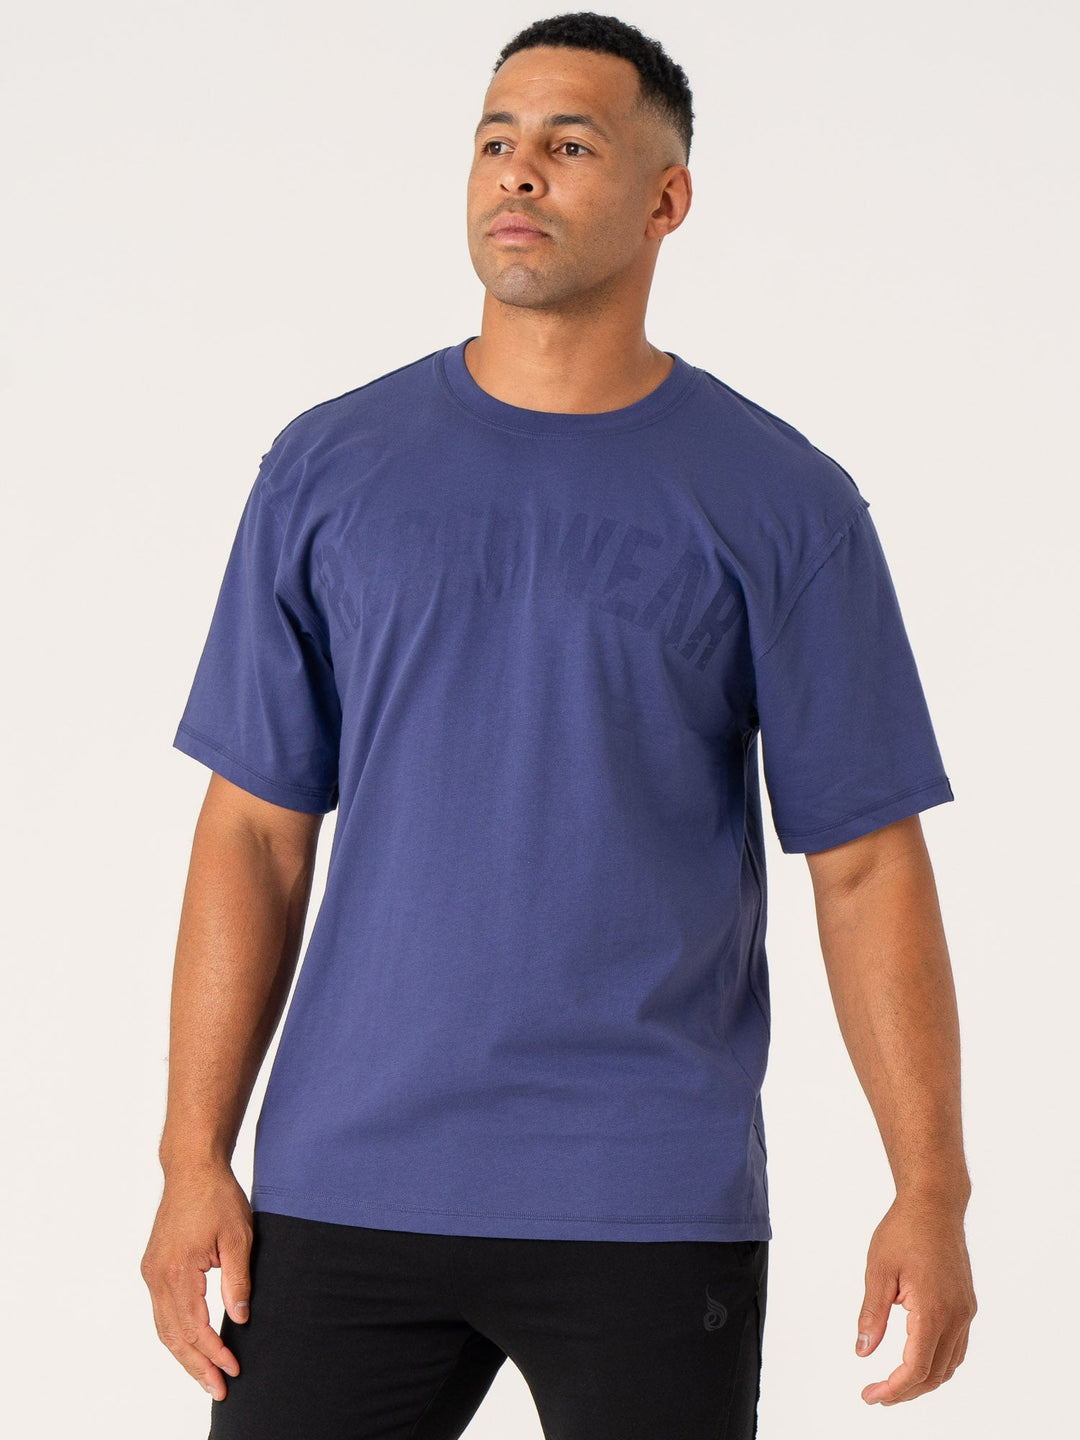 Force Oversized T-Shirt - Indigo Clothing Ryderwear 